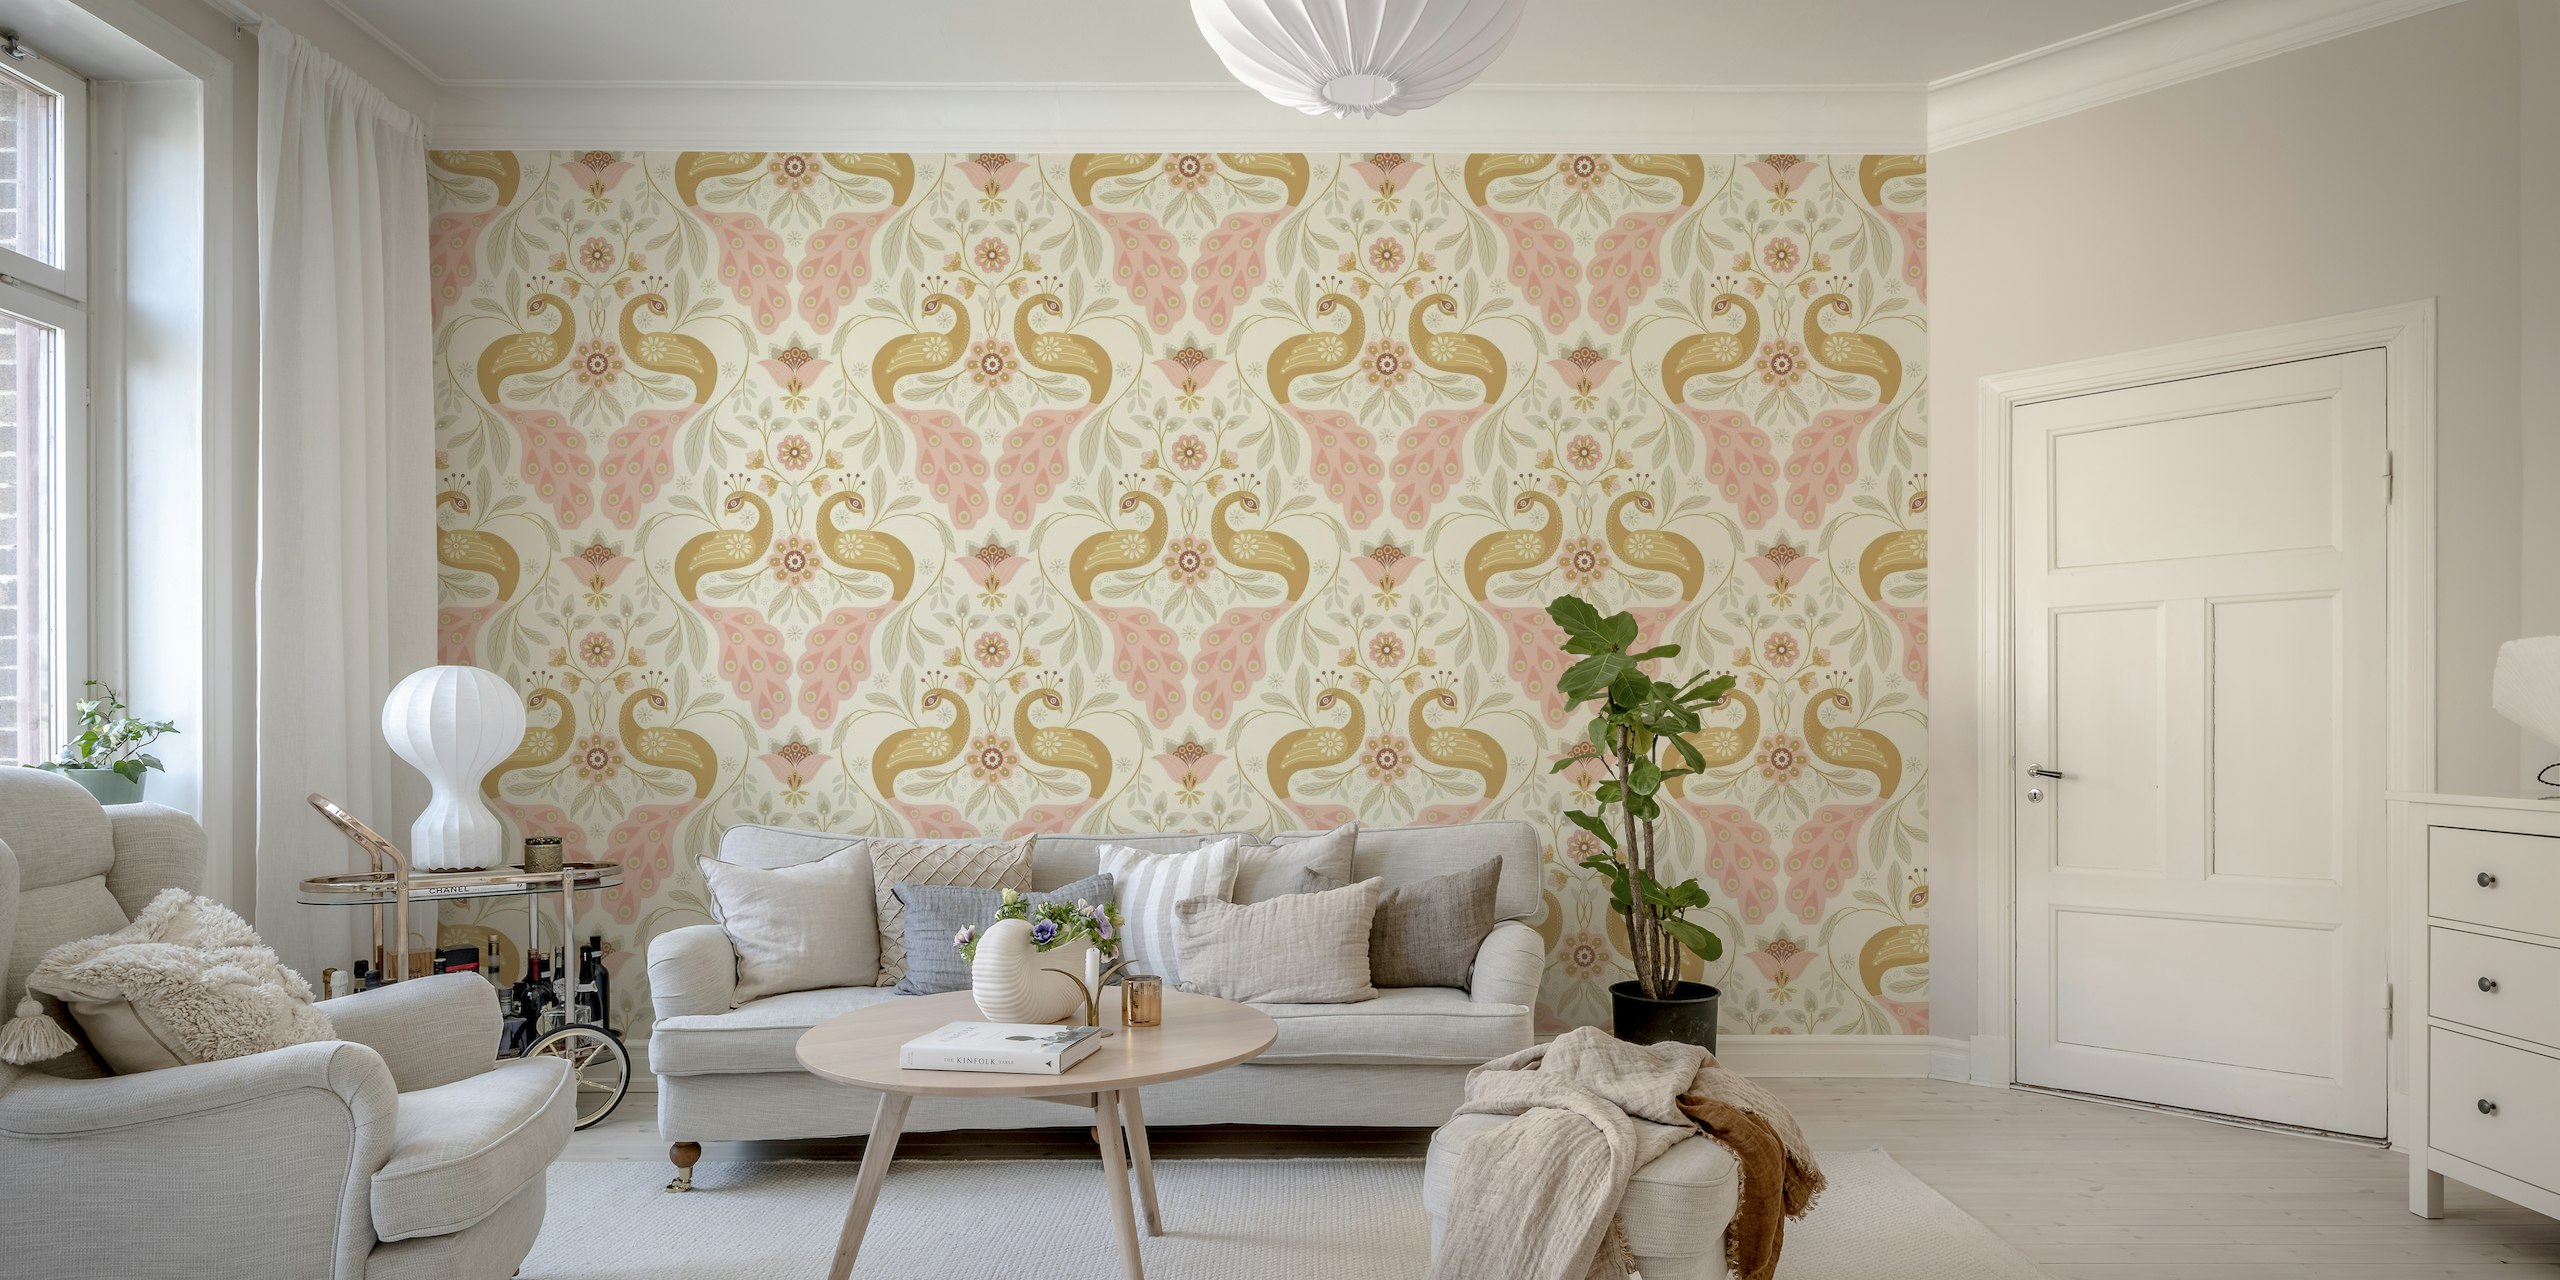 Pastelkleurige pauwmuurschildering met elegant ontwerp voor interieur.